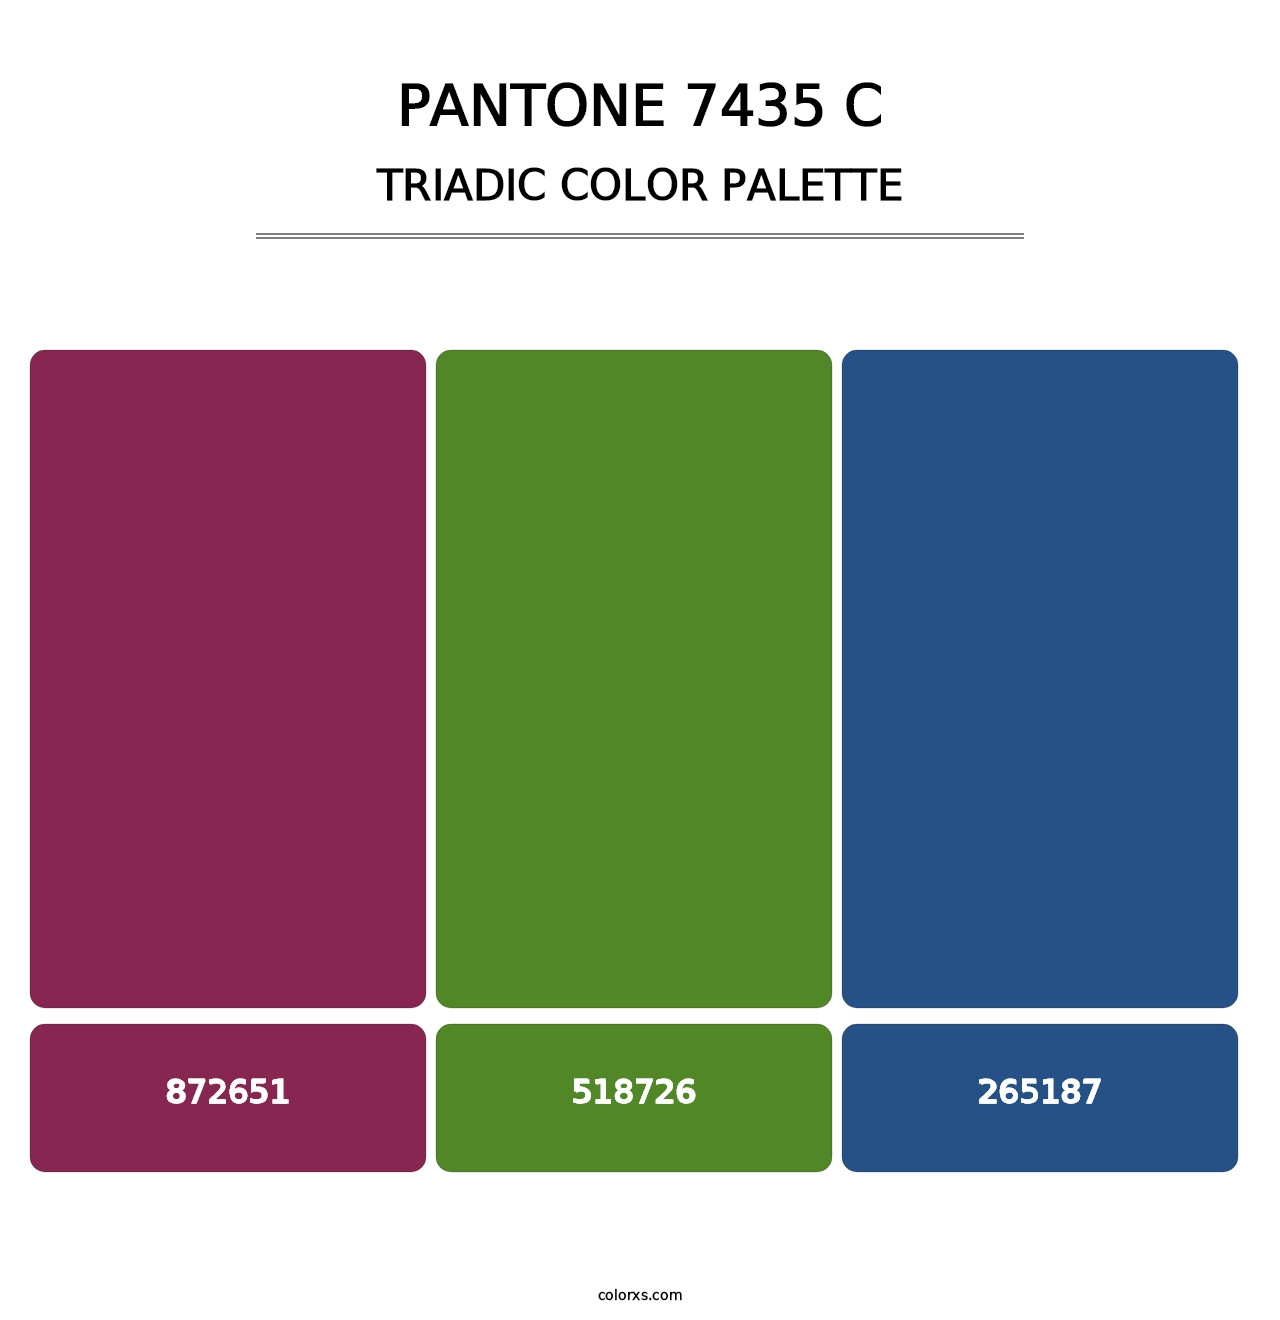 PANTONE 7435 C - Triadic Color Palette